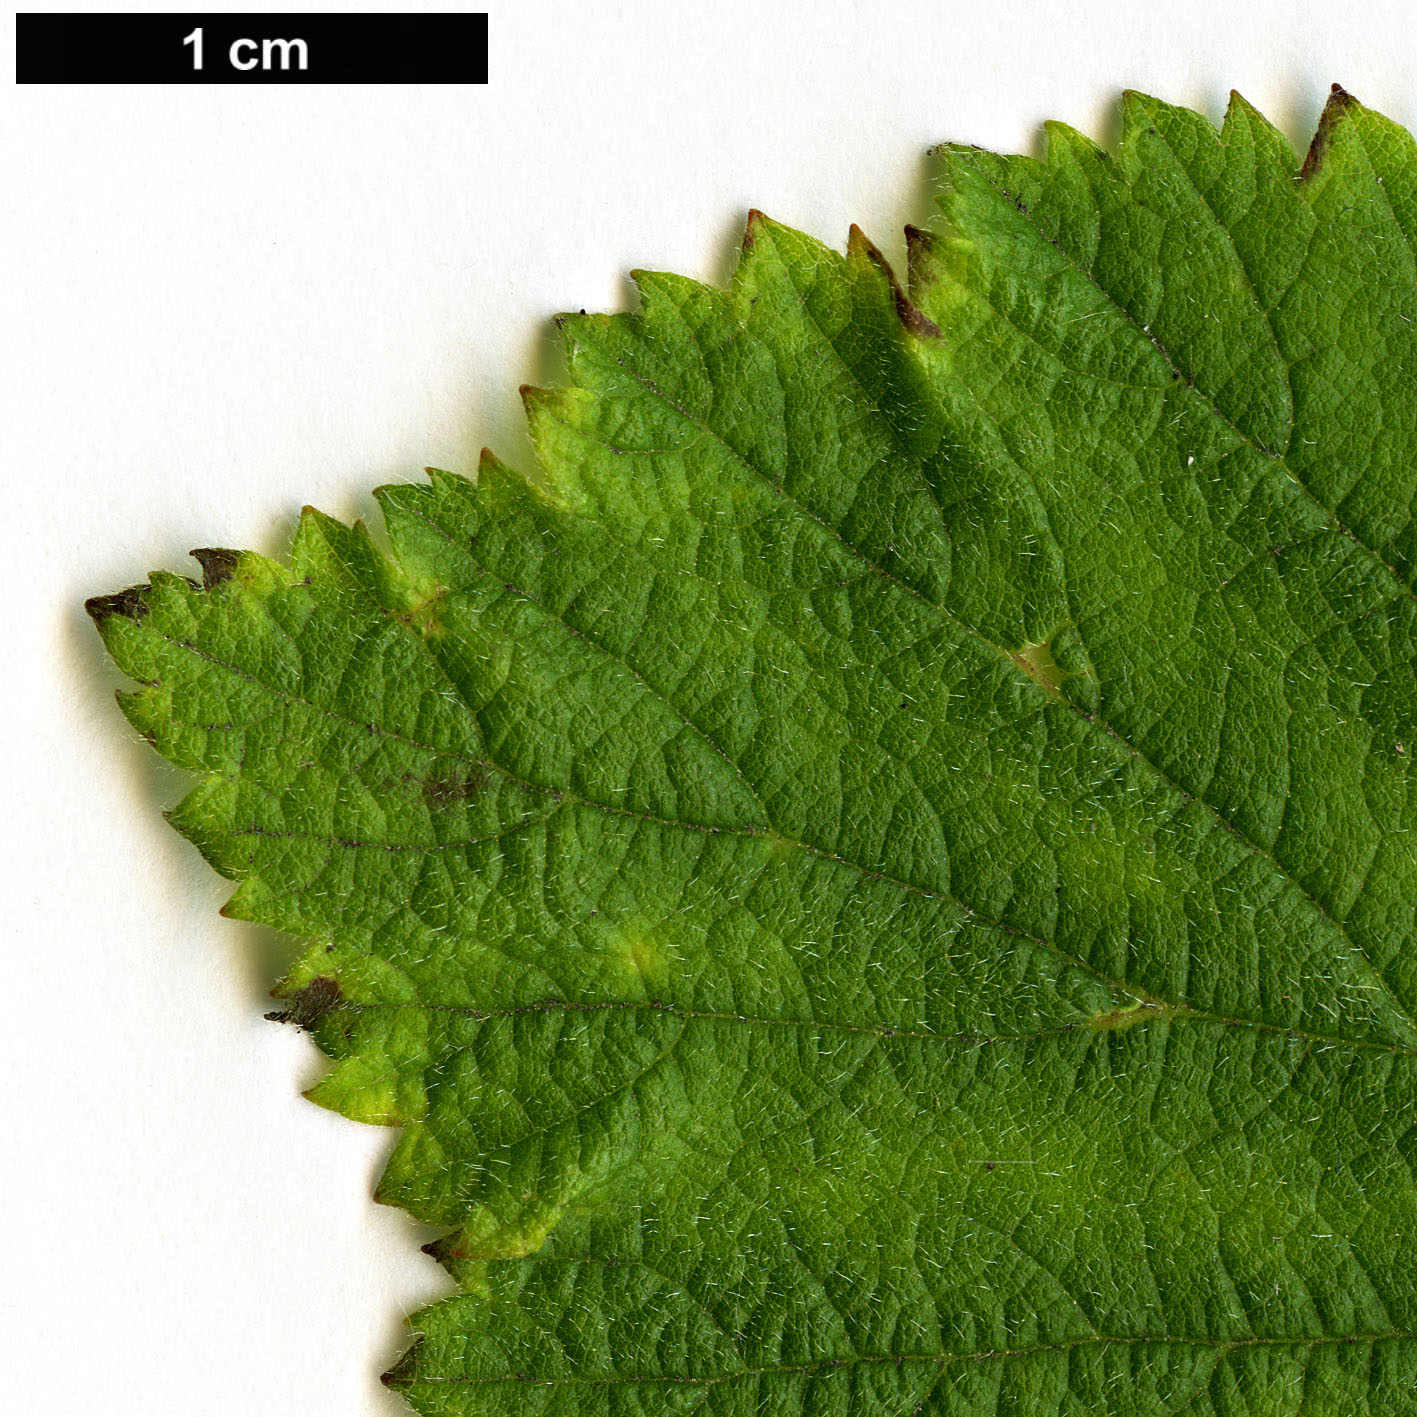 High resolution image: Family: Rosaceae - Genus: Rubus - Taxon: neomexicanus